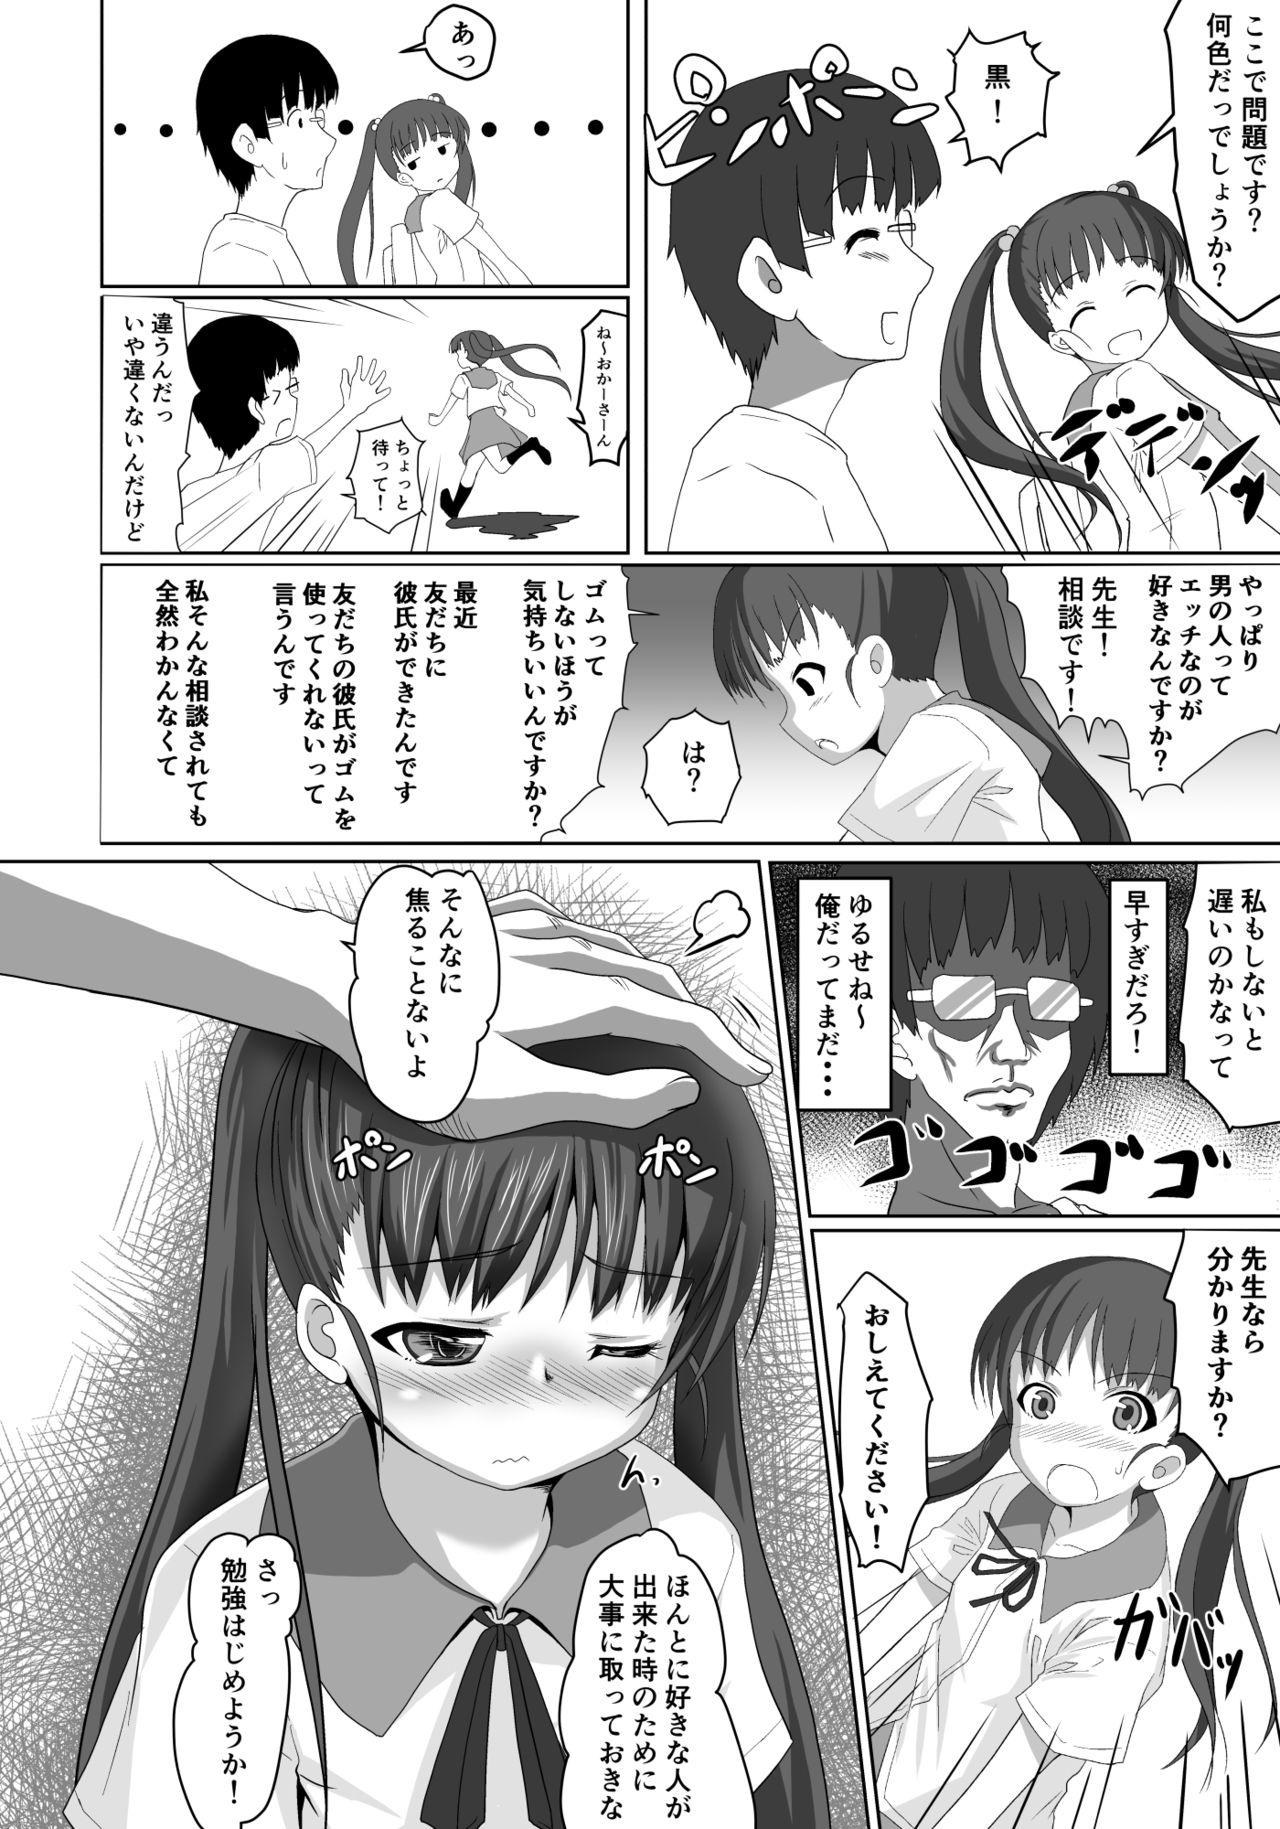 Stripping Sensei! Tokubetsu Jisshuu Shimasho! Sapphic - Page 9